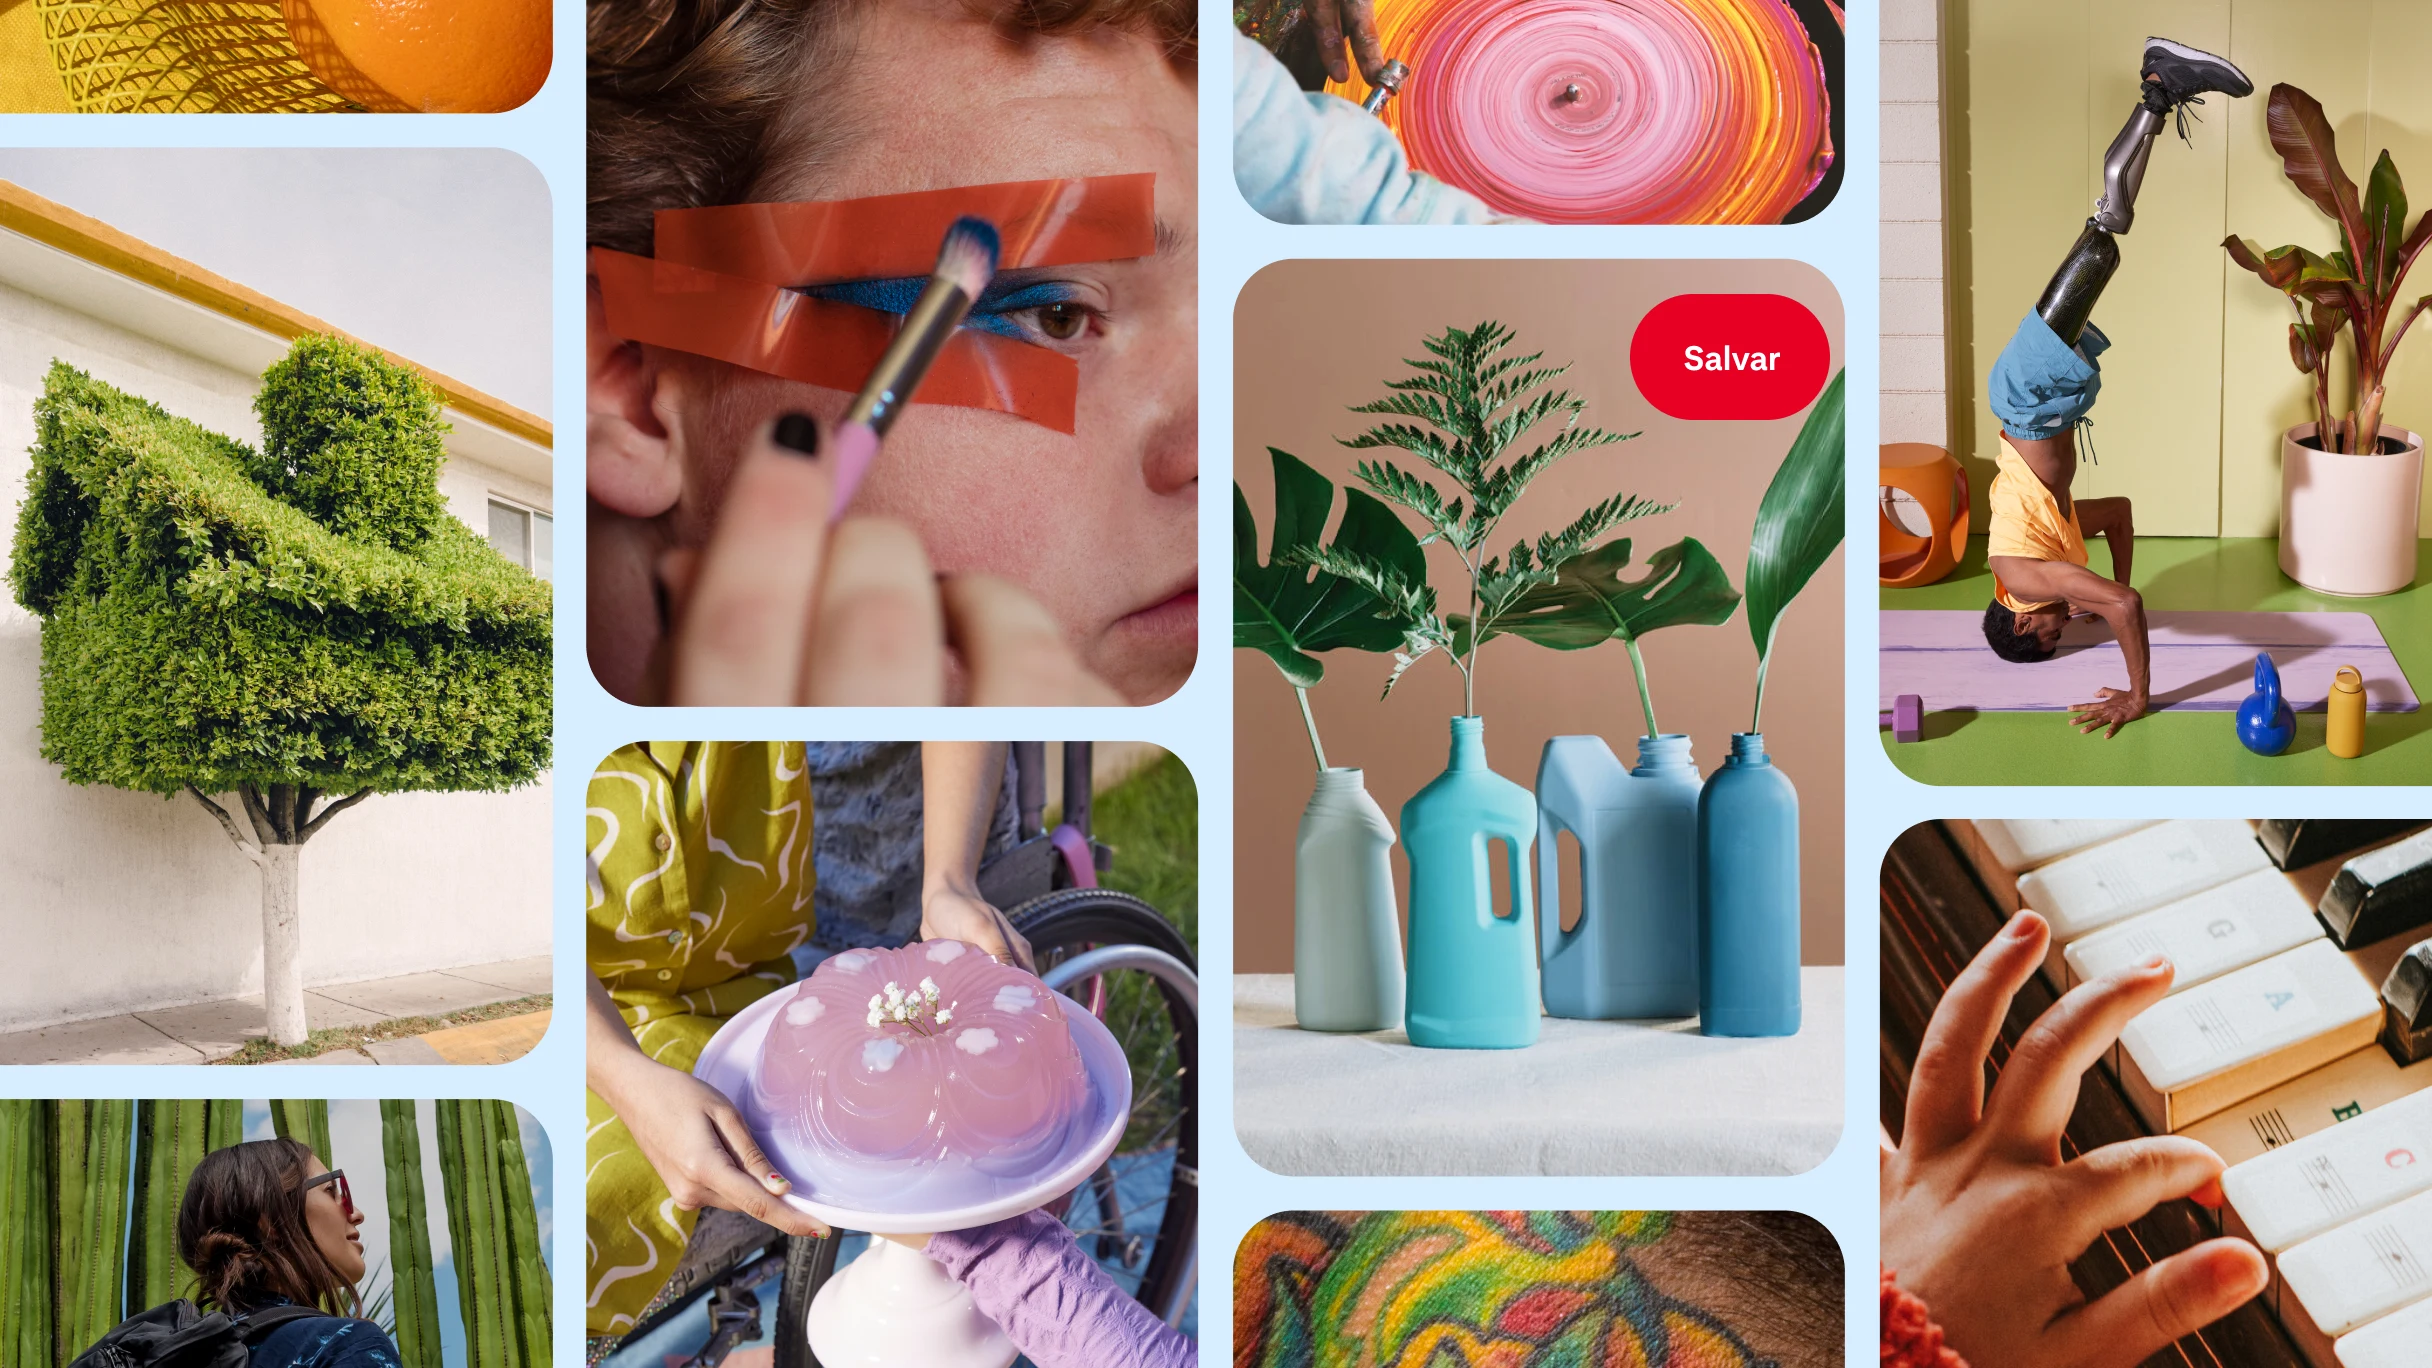  Um feed inicial do Pinterest com uma pessoa se maquiando, plantas verdes em vasos, uma pessoa com prótese nas pernas fazendo parada de cabeça e muito mais.